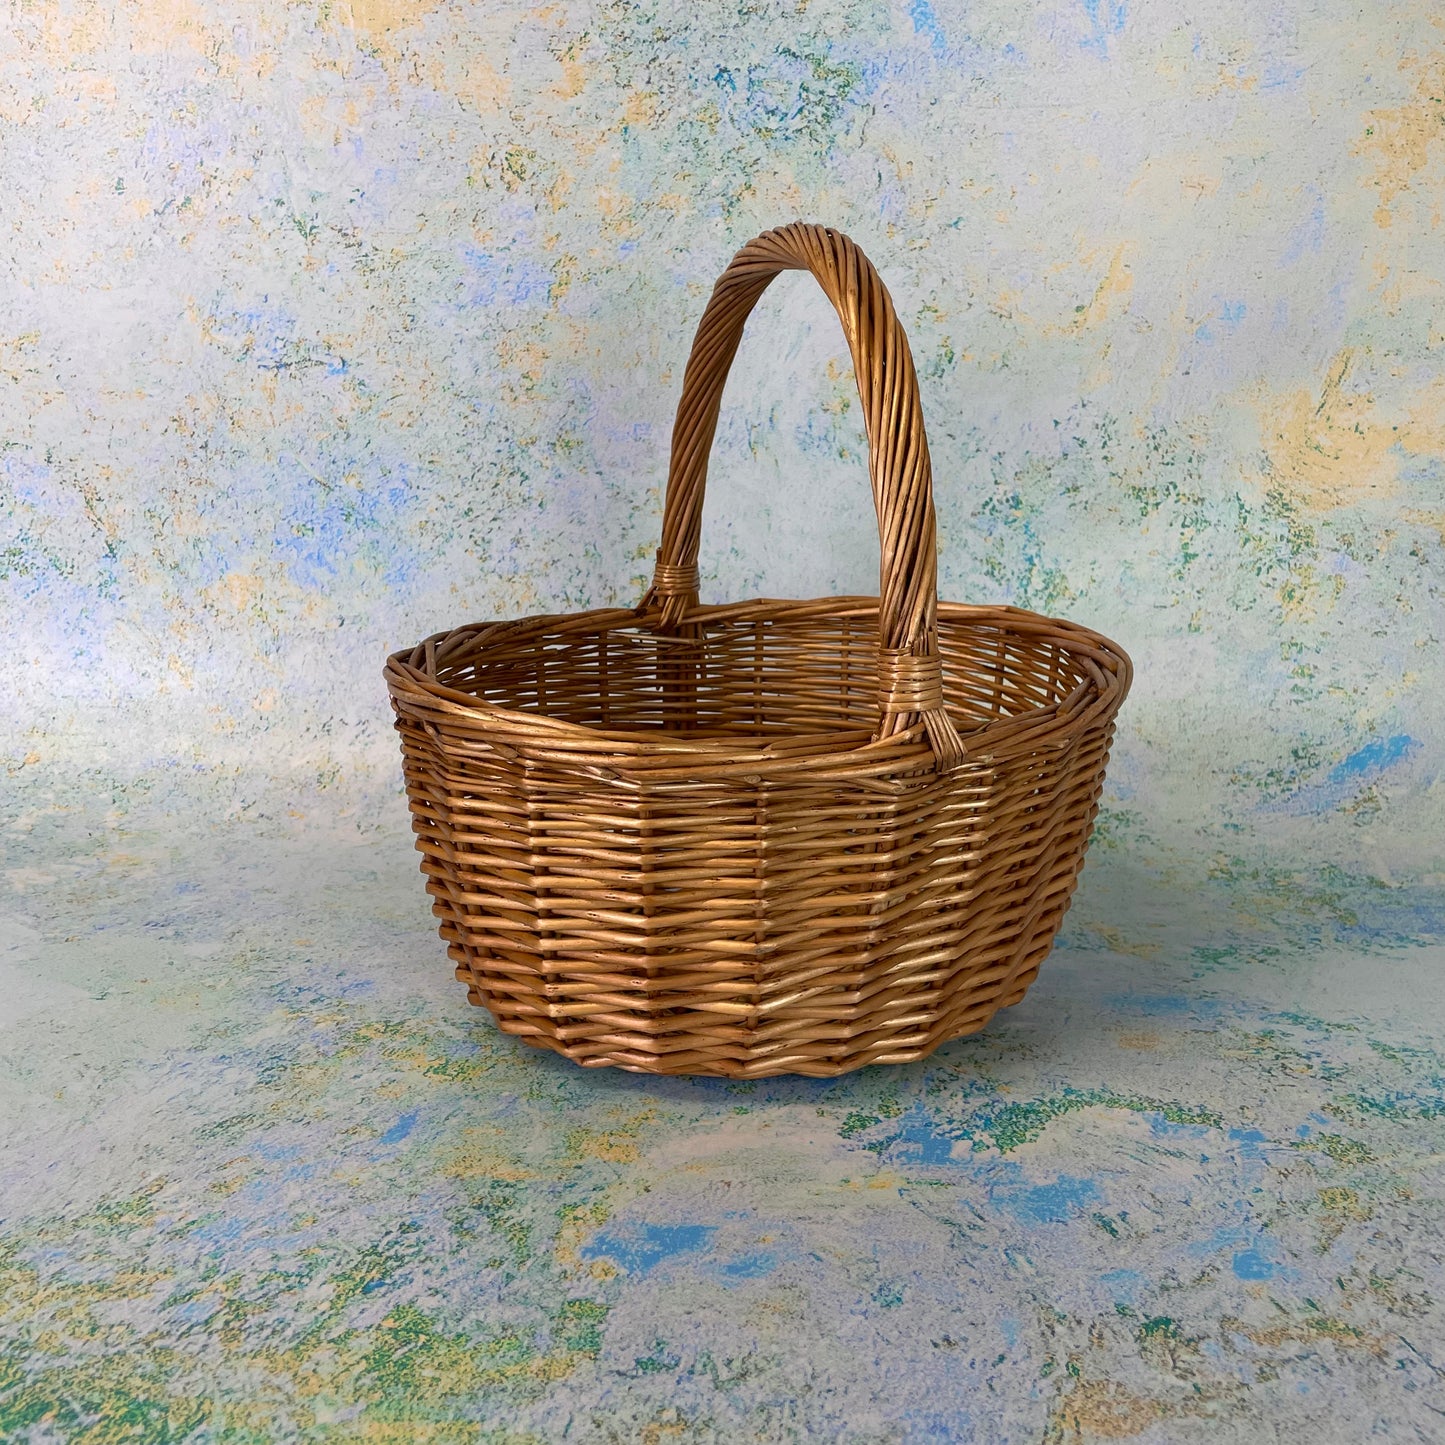 Easter Egg Hunt Basket - Brown Wicker